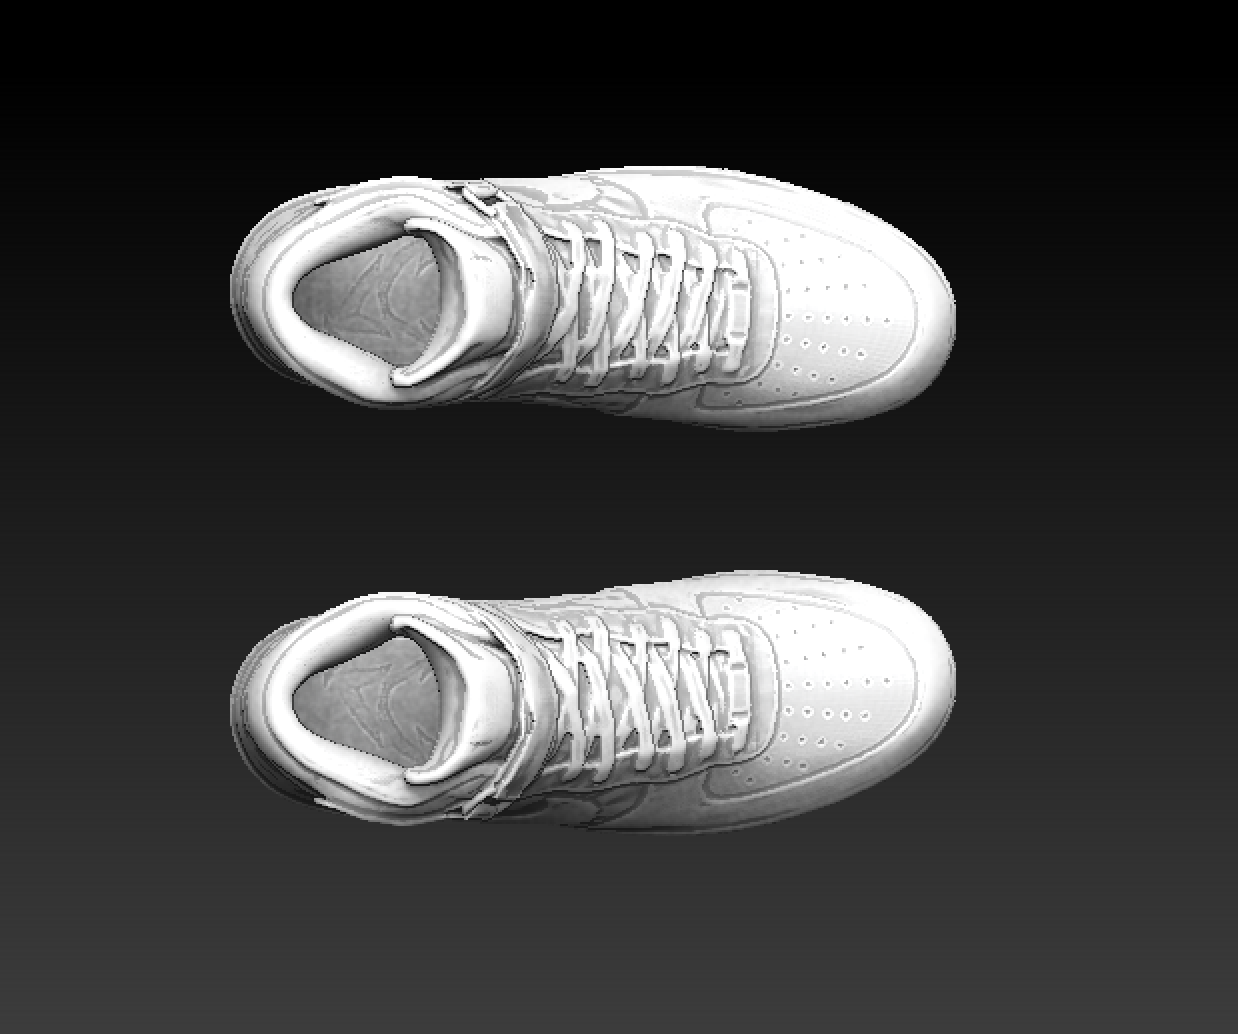 Screenshot 2020-12-28 at 11.48.08.png Файл 3D Кроссовки Nike Air Force 1 Finger・3D-печатная модель для загрузки, SpaceCadetDesigns